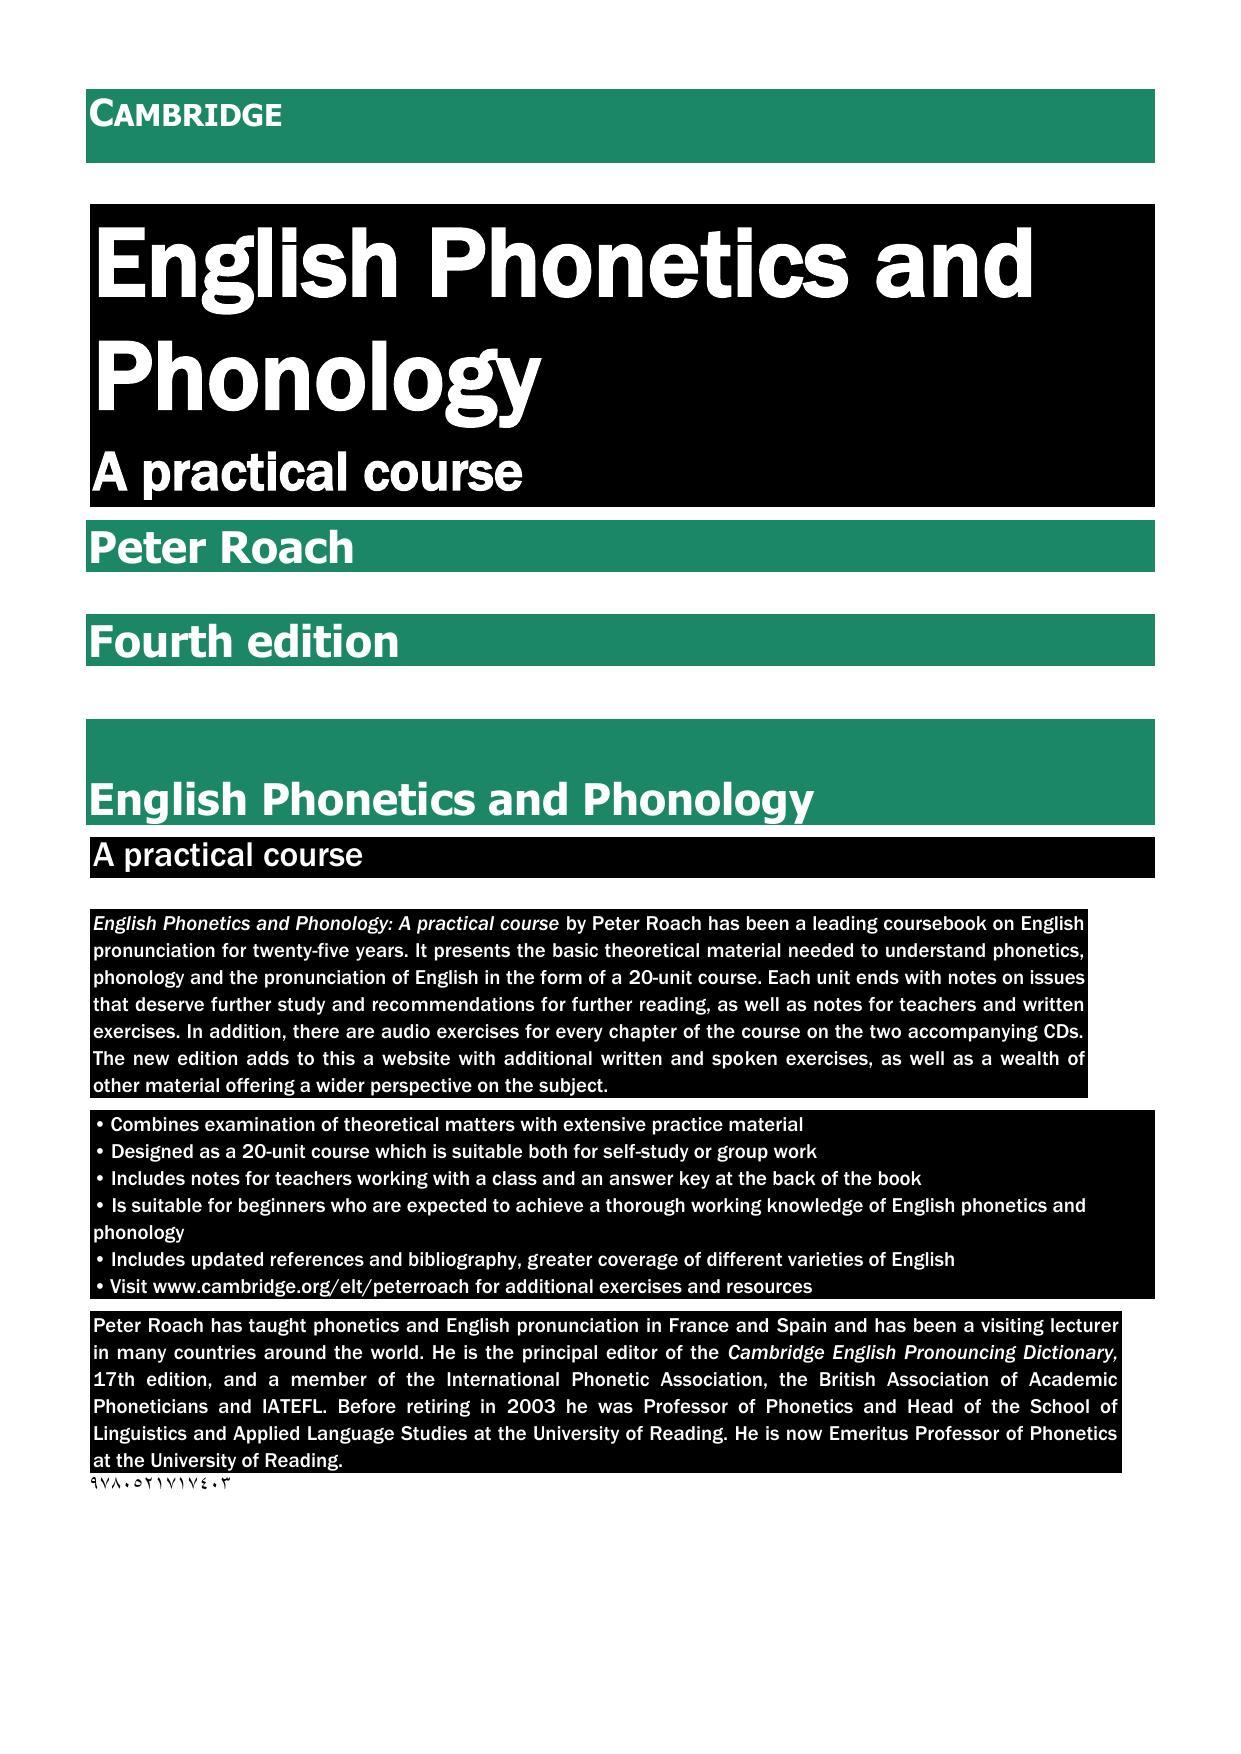 English Phonetics and Phonology 2013